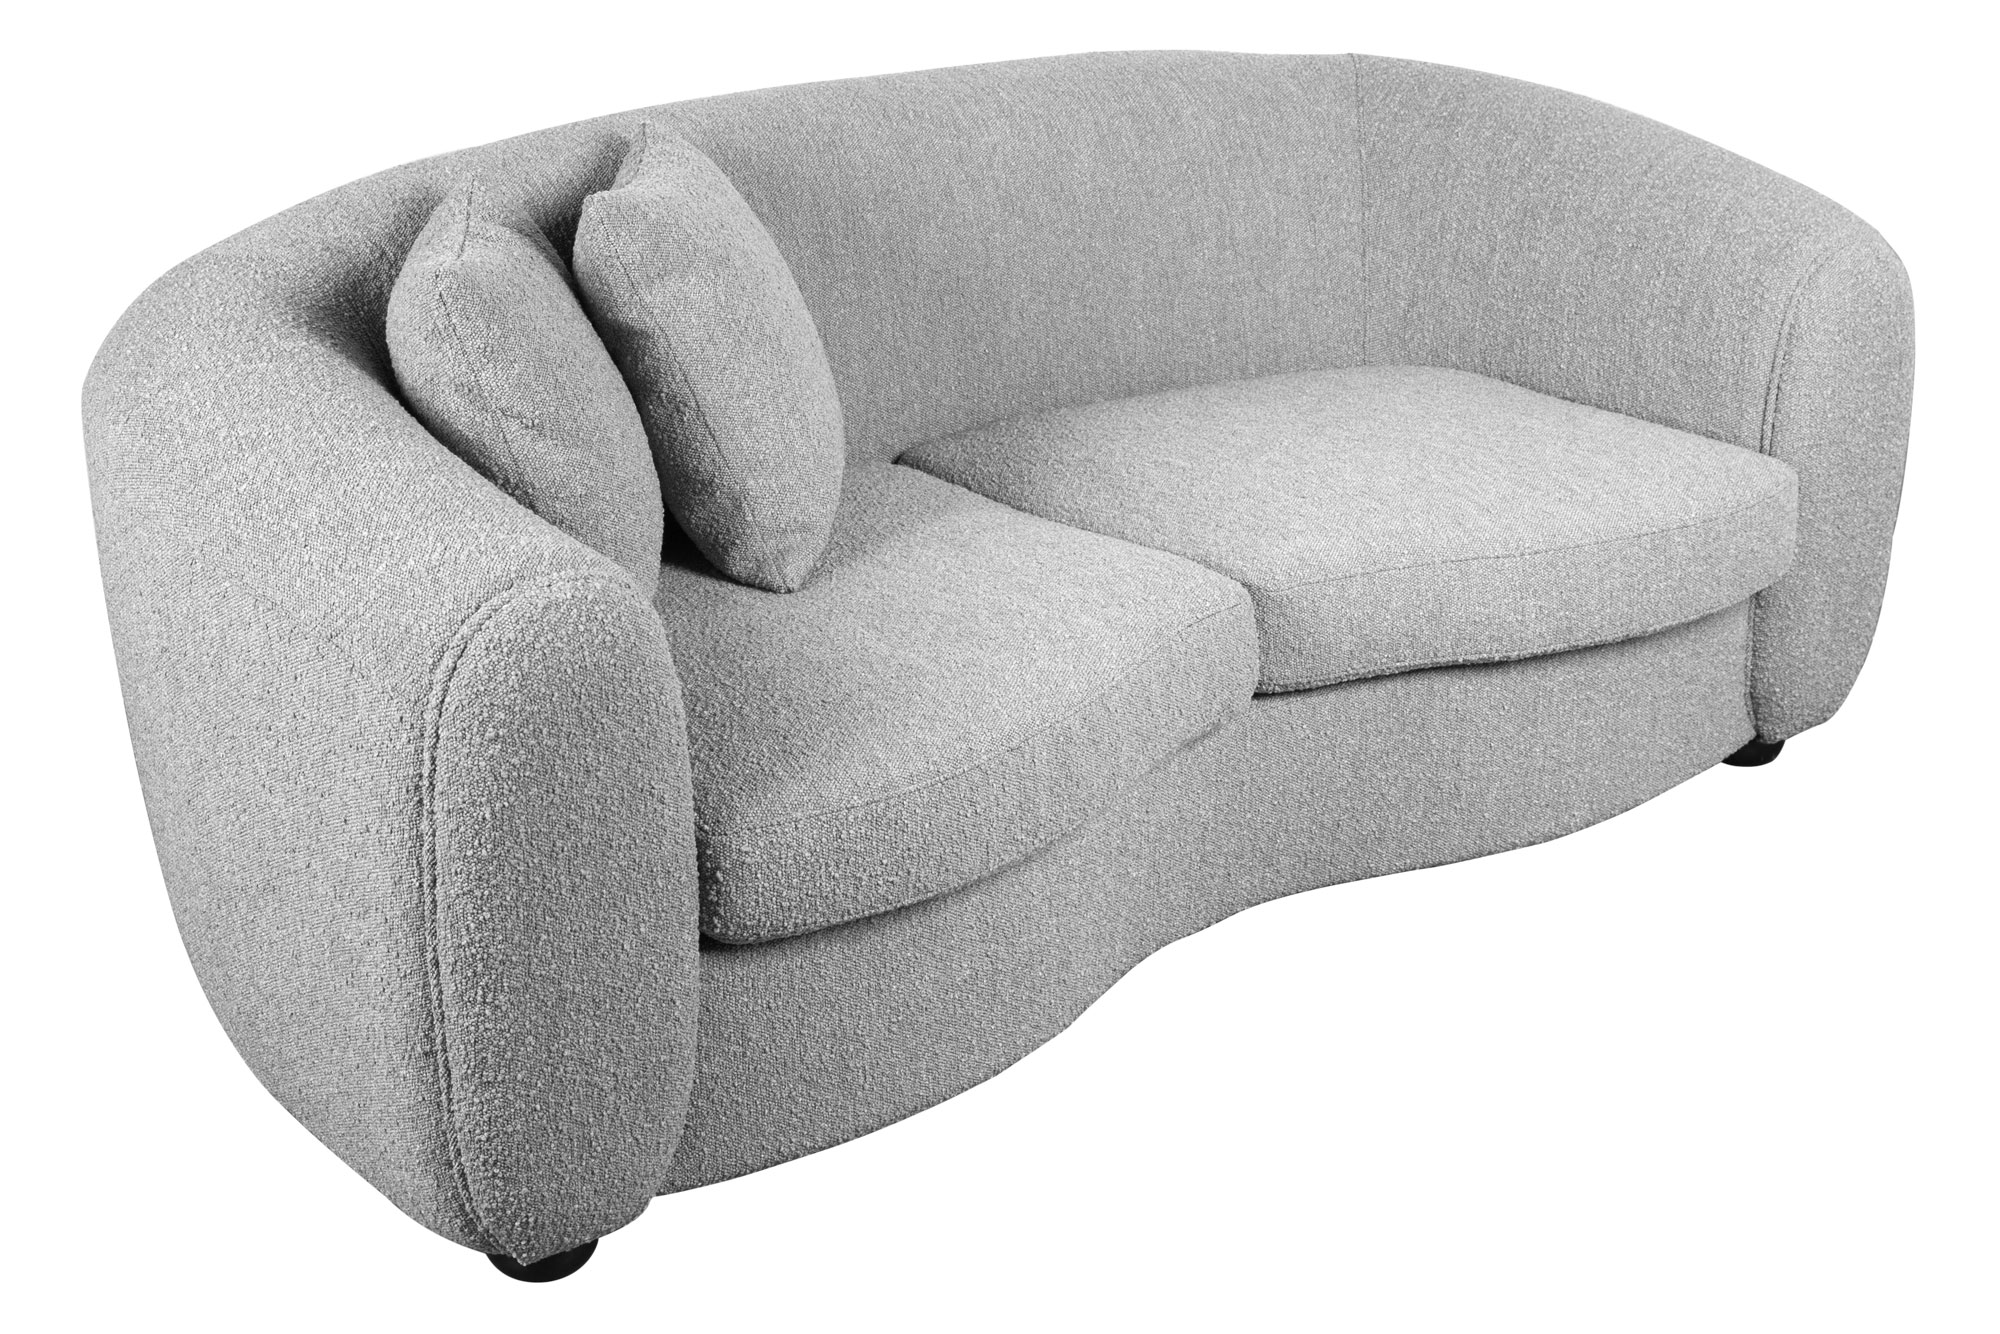 Karan 2-Seater Sofa